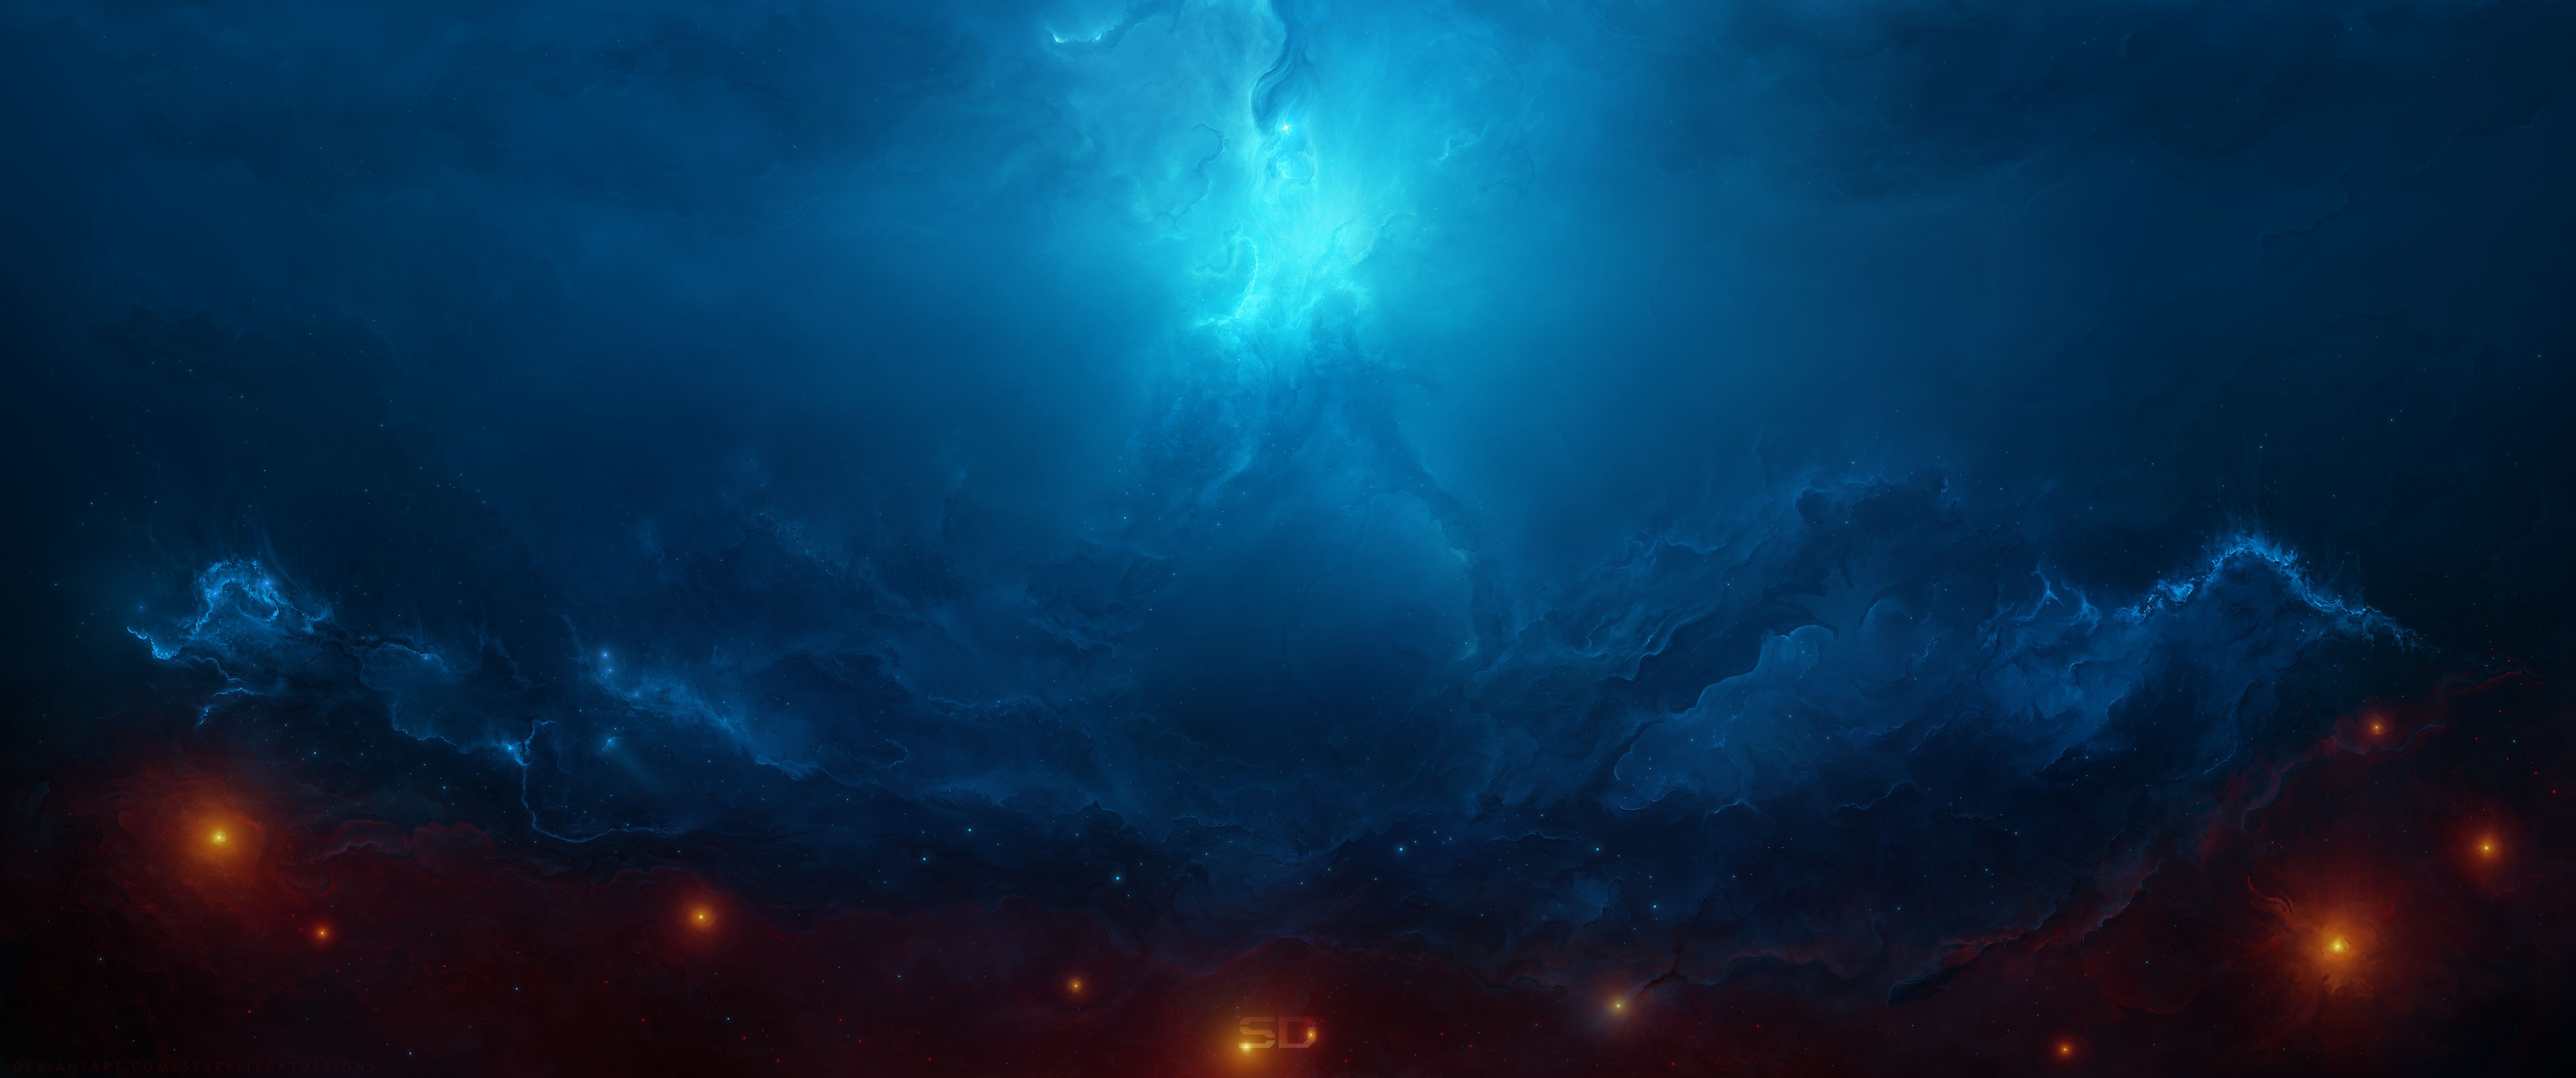 Скачать обои бесплатно Космос, Синий, Туманность, Научная Фантастика картинка на рабочий стол ПК